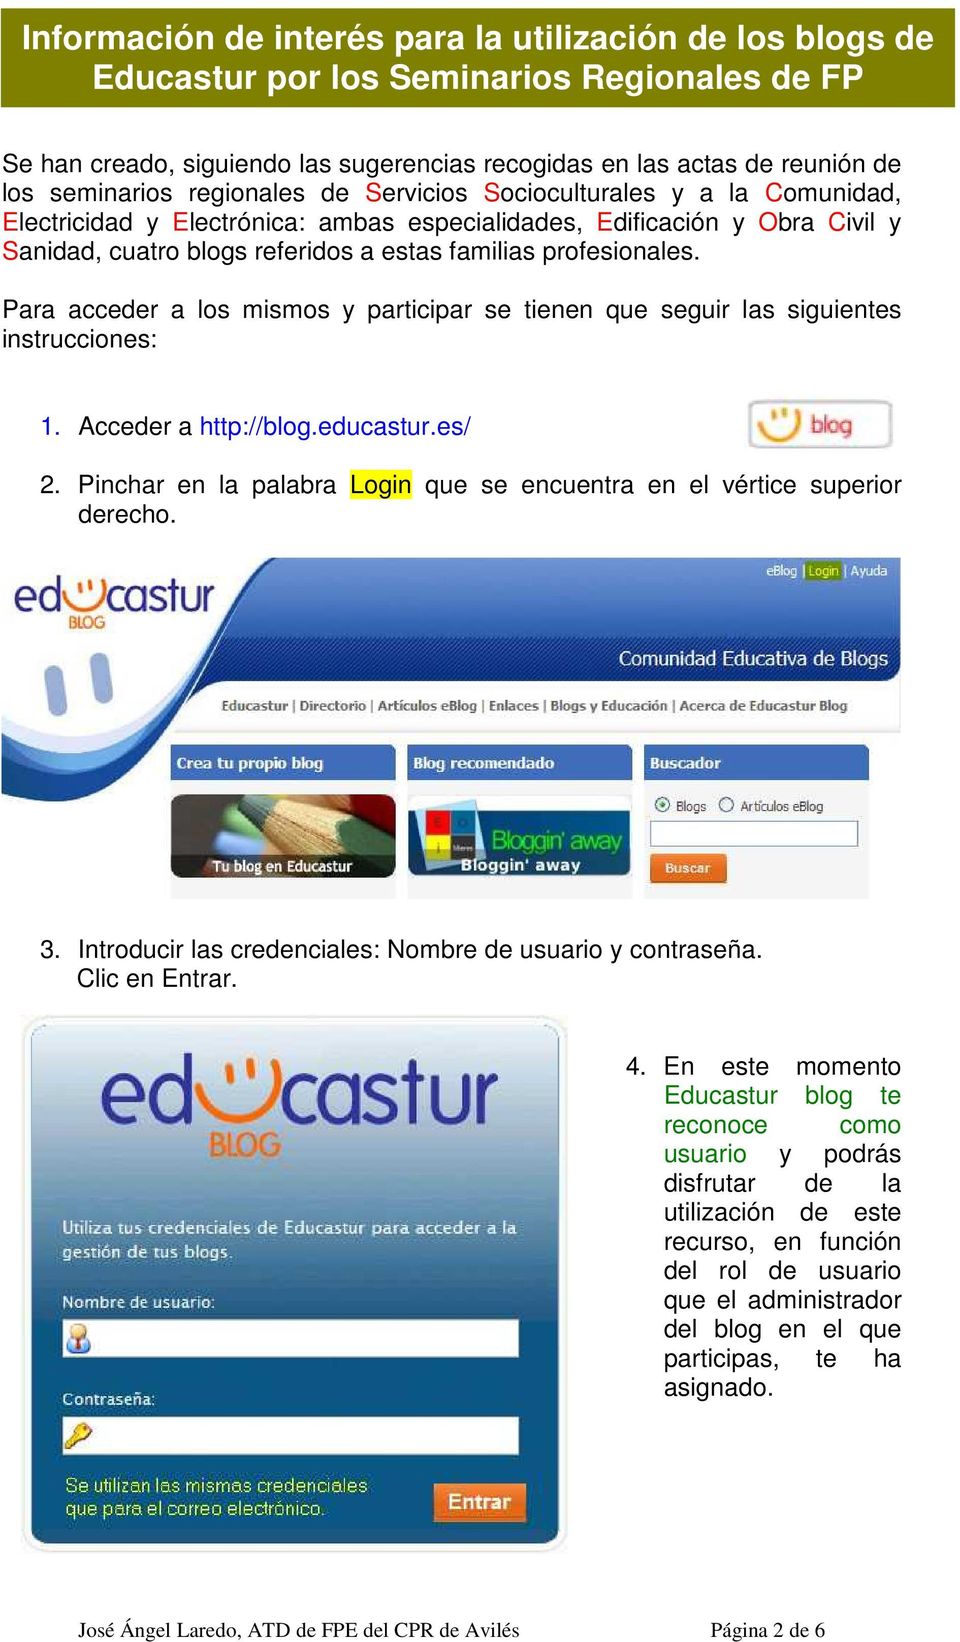 Acceder a http://blog.educastur.es/ 2. Pinchar en la palabra Login que se encuentra en el vértice superior derecho. 3. Introducir las credenciales: Nombre de usuario y contraseña. Clic en Entrar. 4.